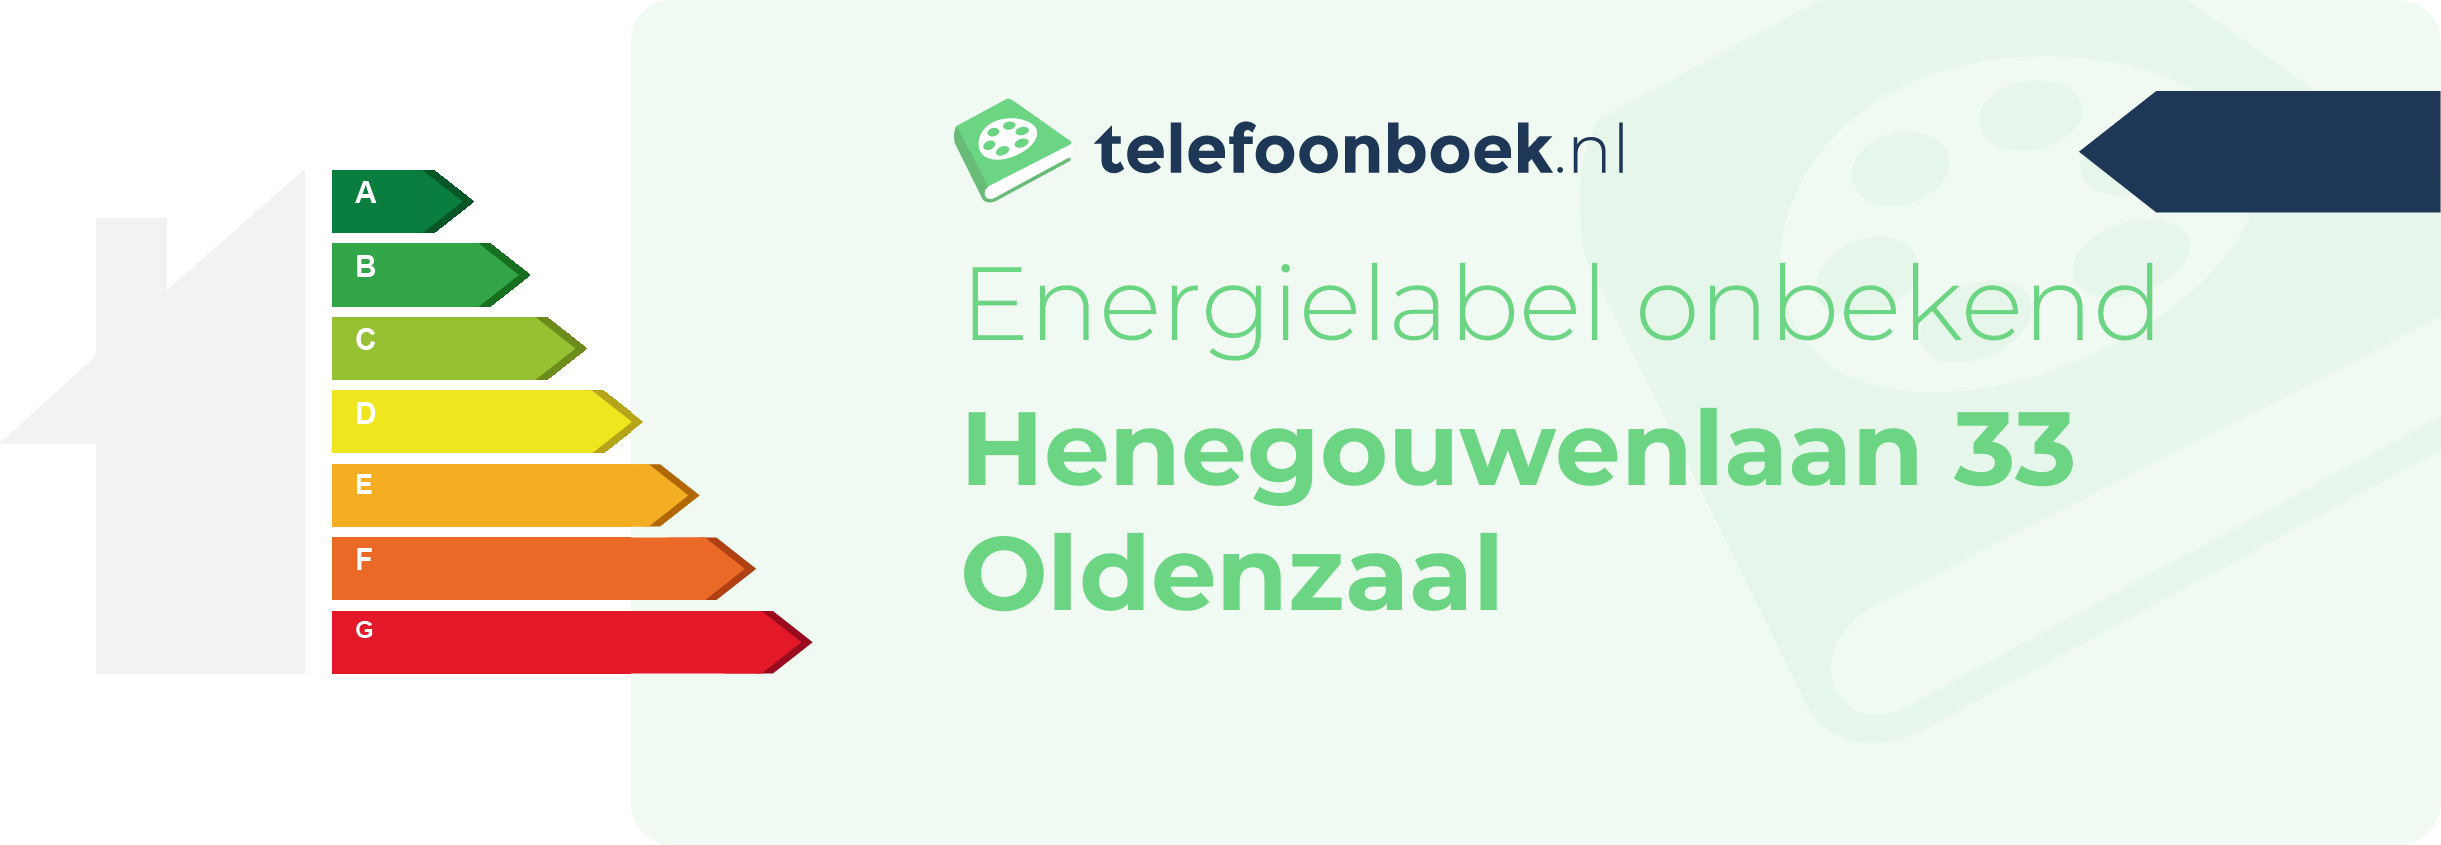 Energielabel Henegouwenlaan 33 Oldenzaal